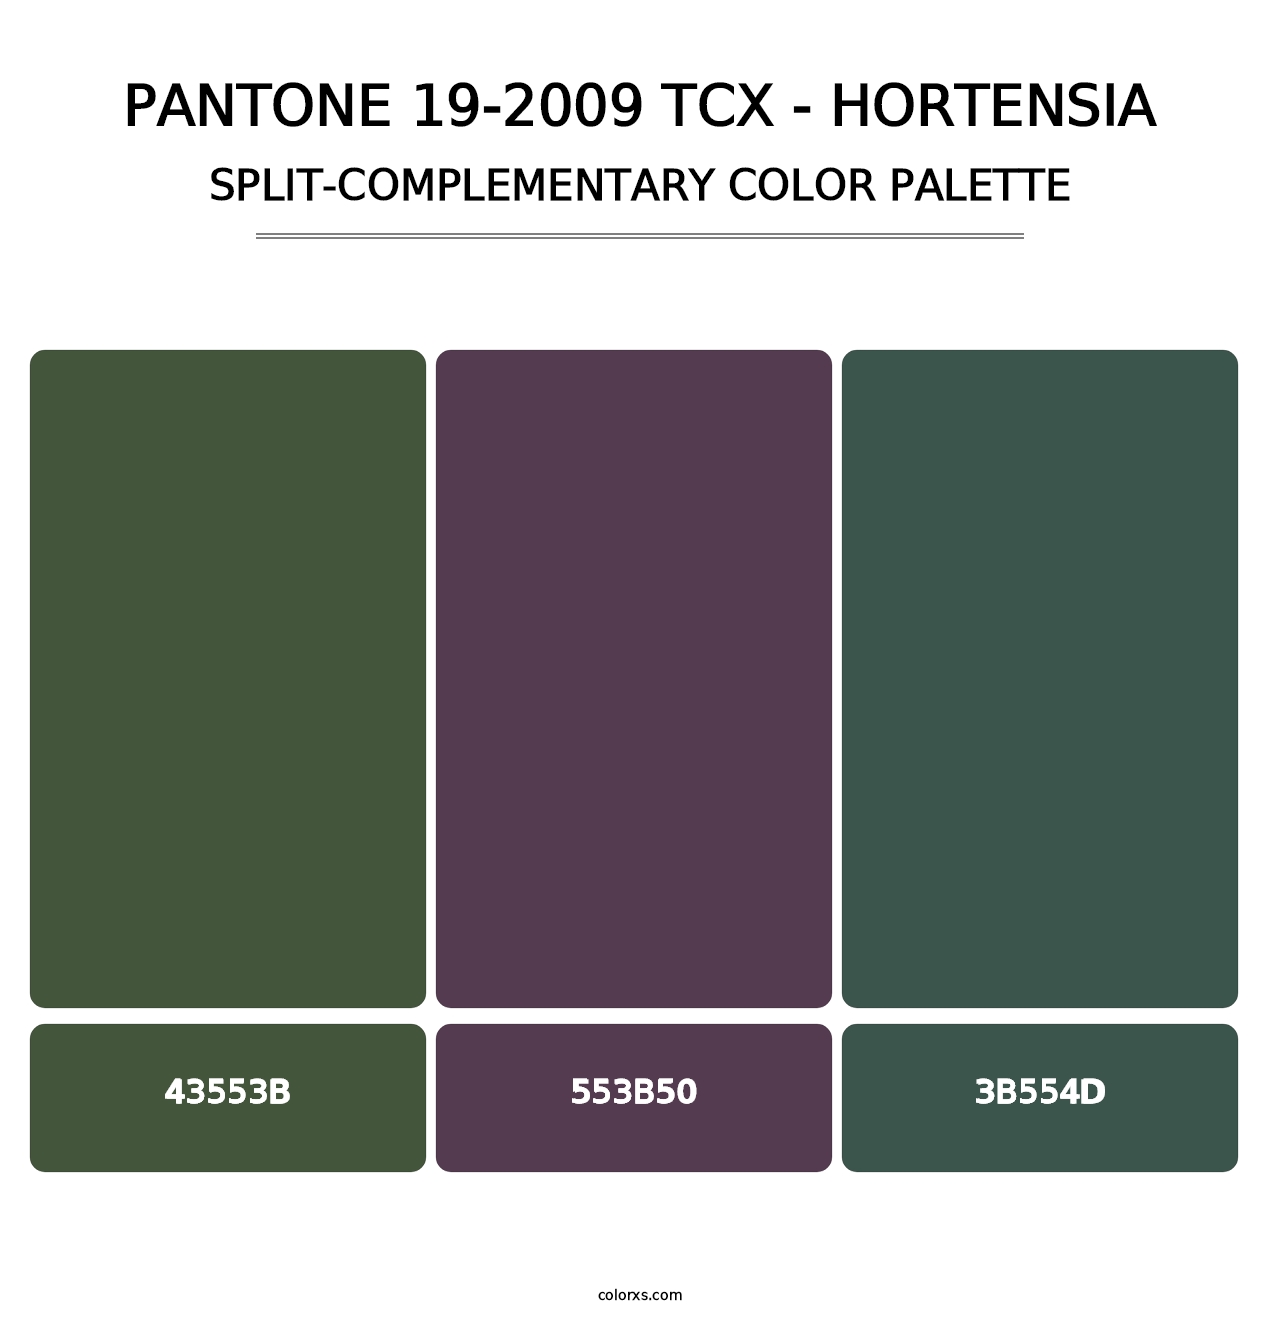 PANTONE 19-2009 TCX - Hortensia - Split-Complementary Color Palette